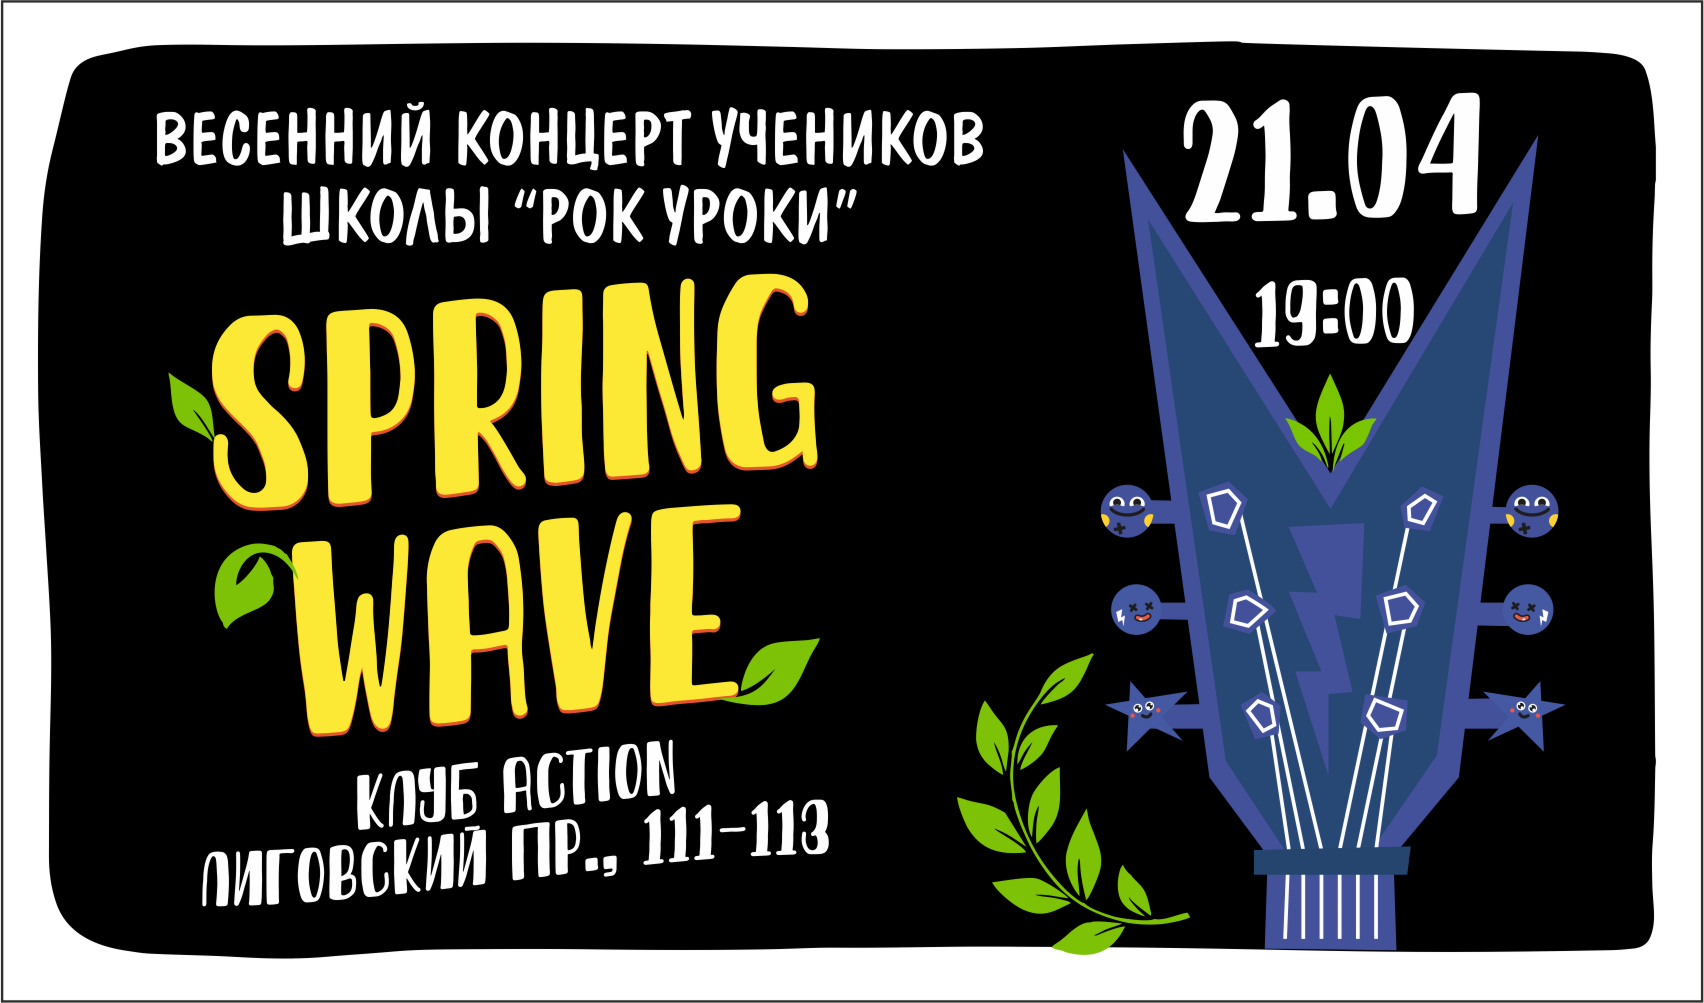 Spring Wave — Весенний концерт учеников школы 21.04.2022